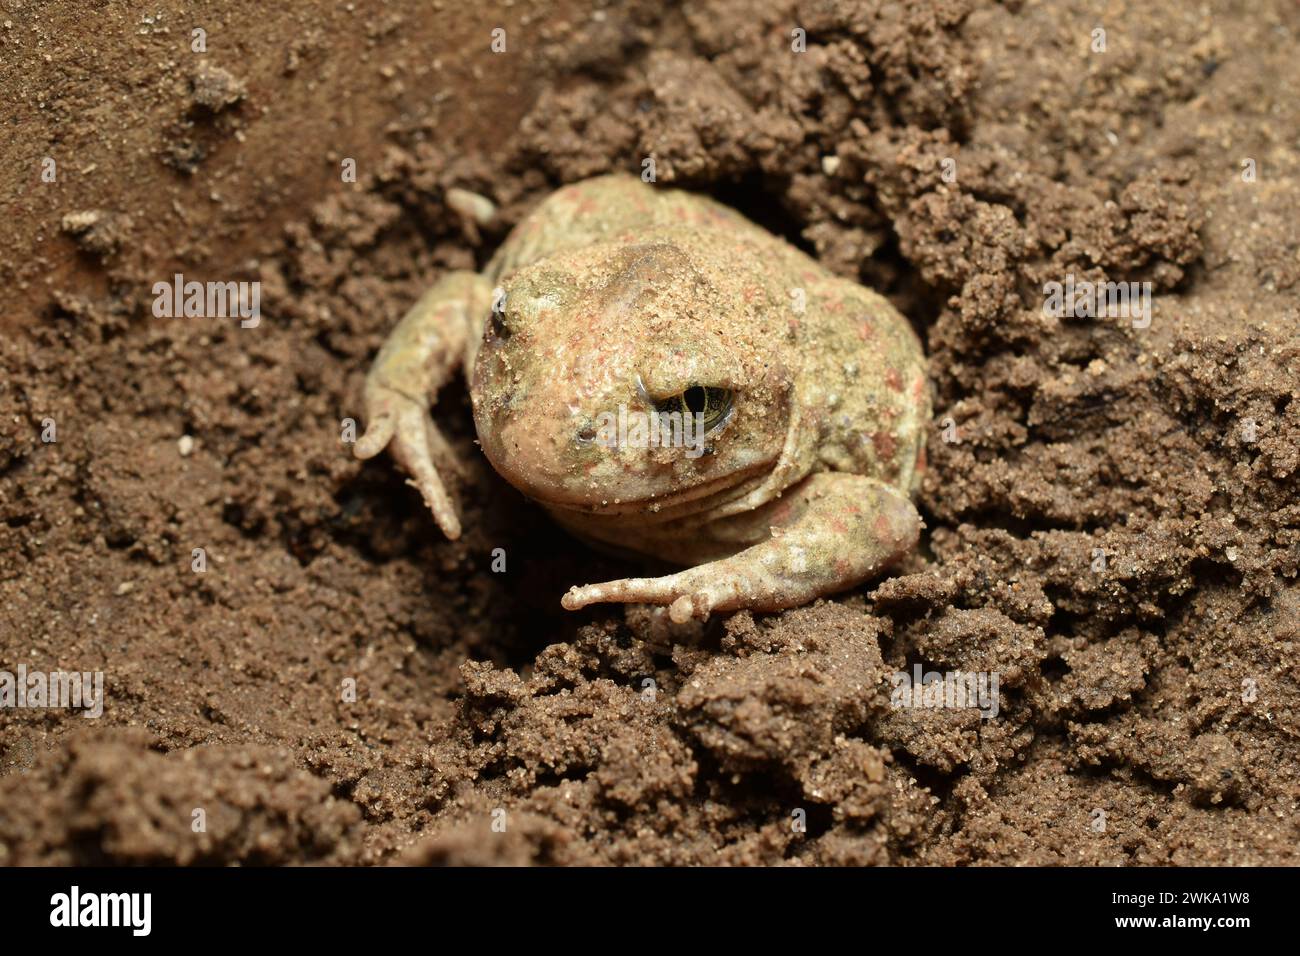 La photo montre une grenouille qui hiberne en hiver et pour cela elle s'enfouit dans le sol. Banque D'Images